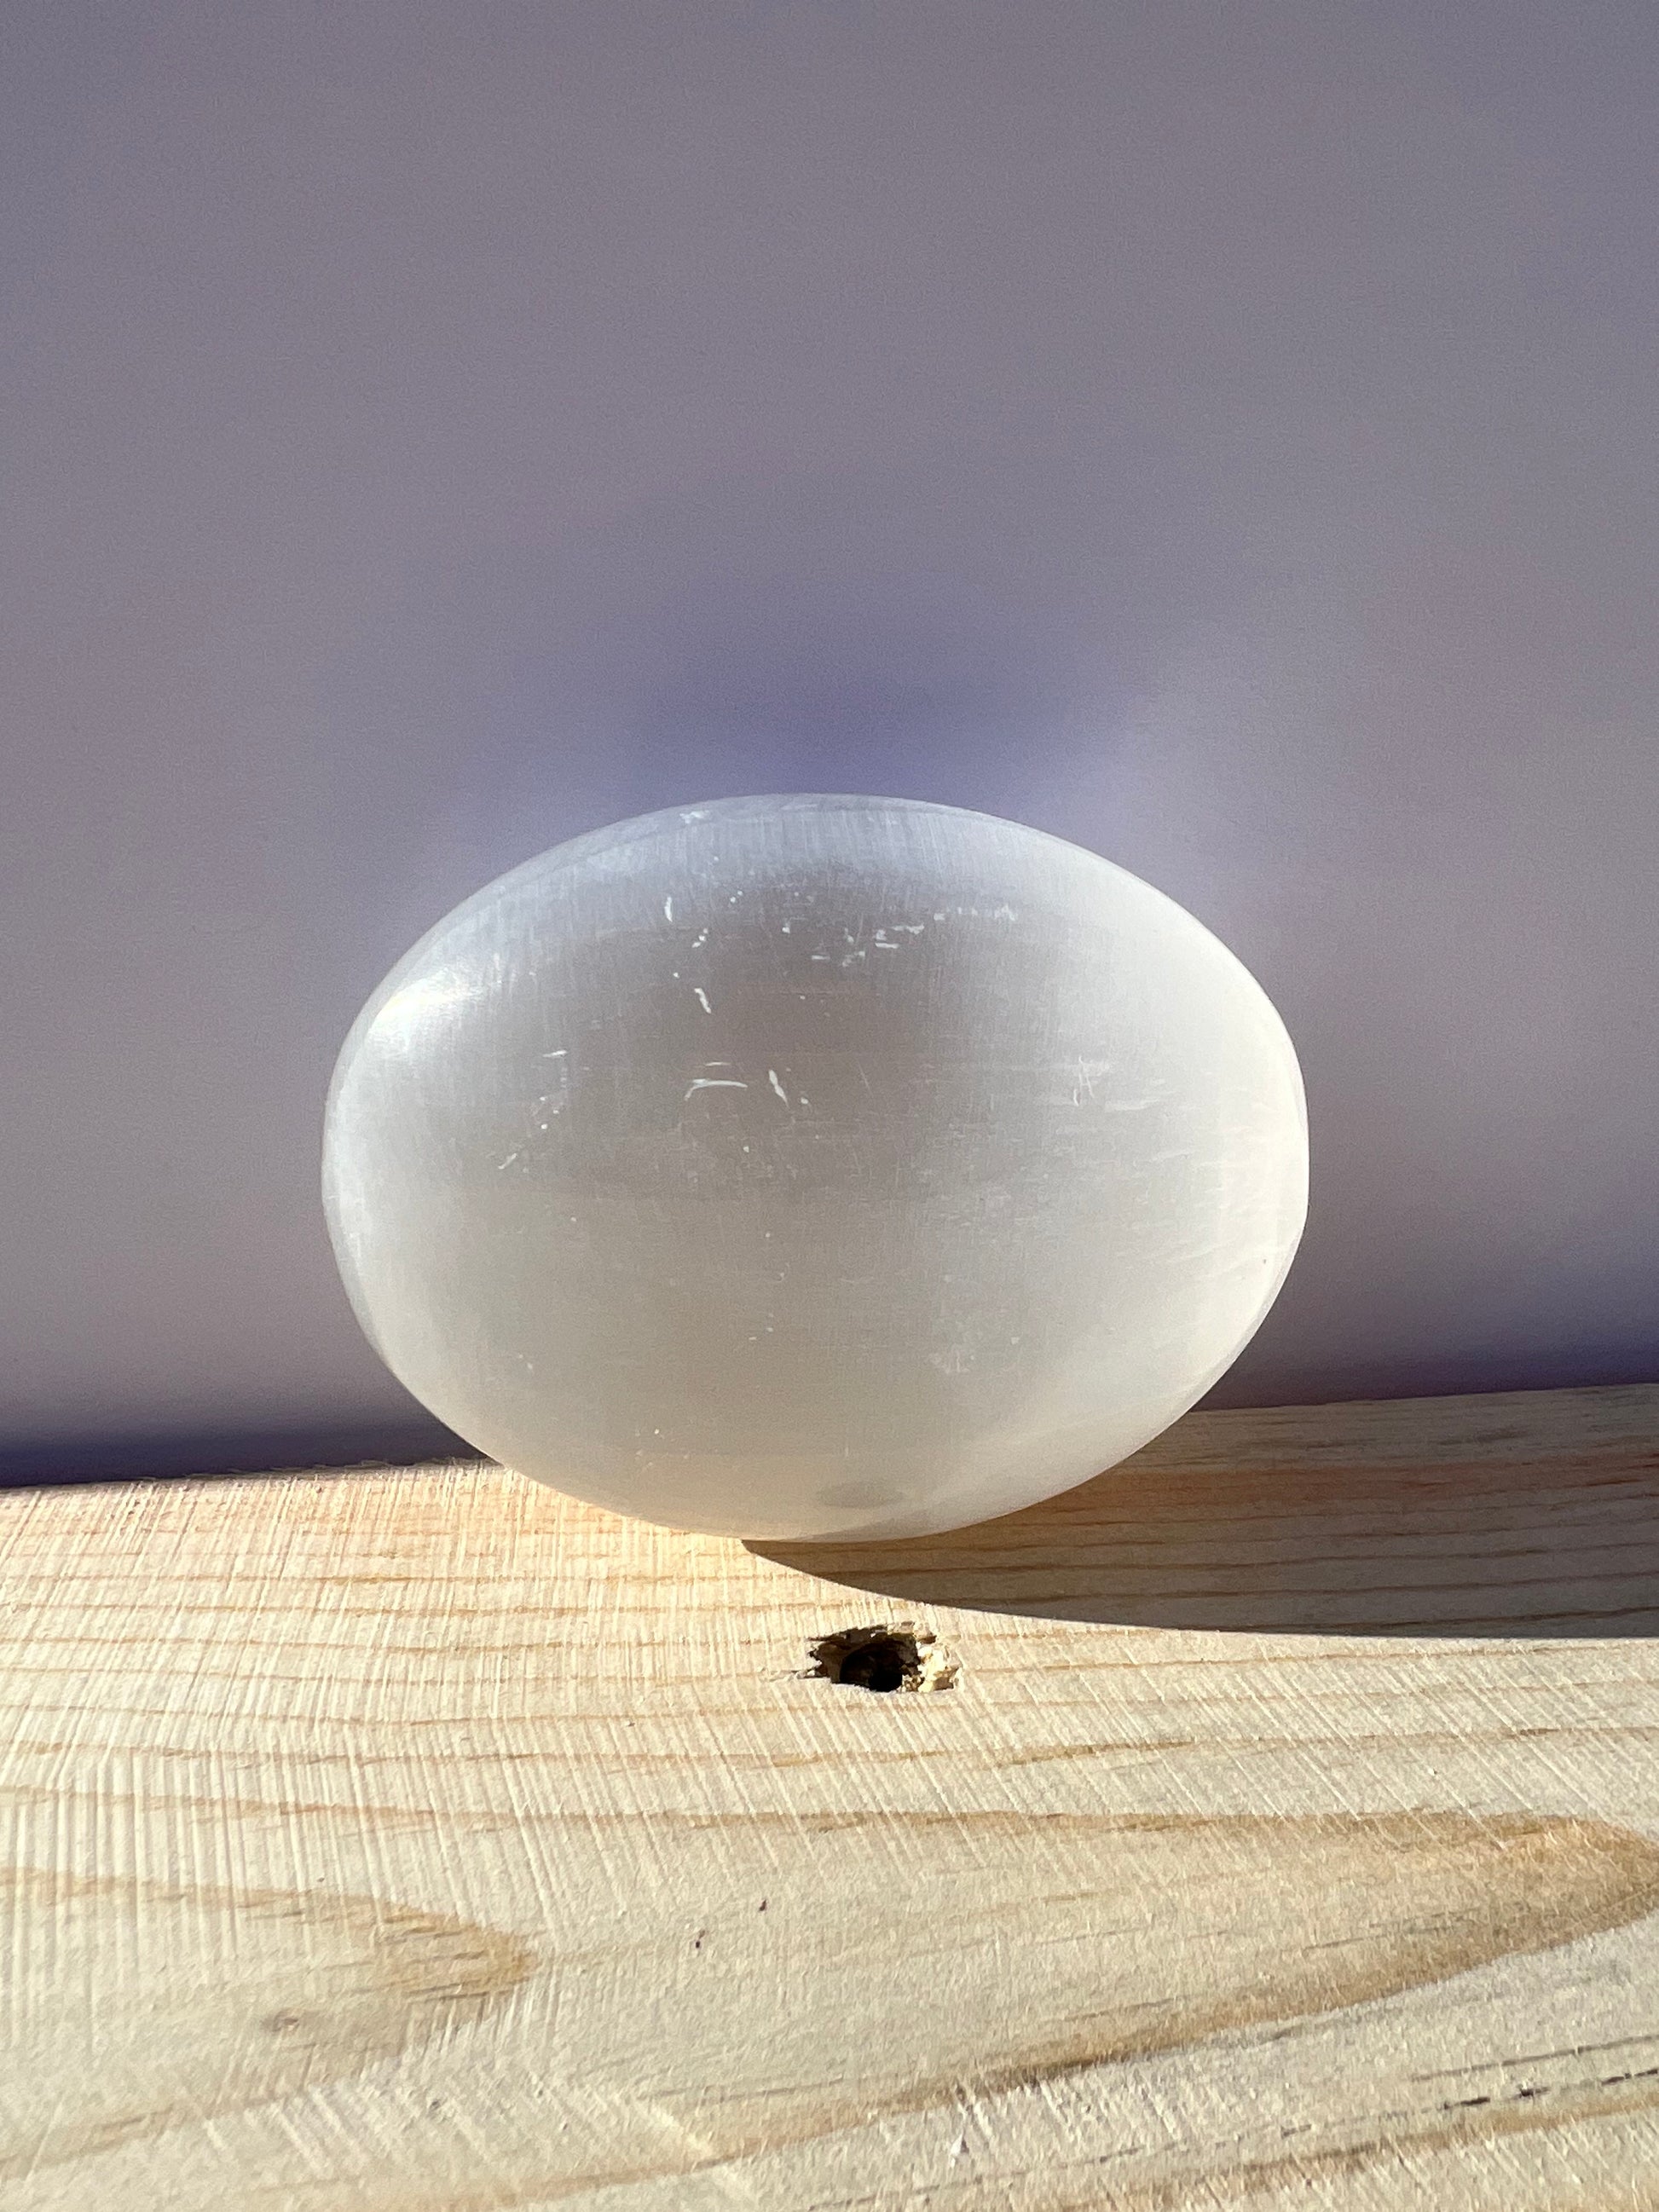 An oval shaped selenite palm stone